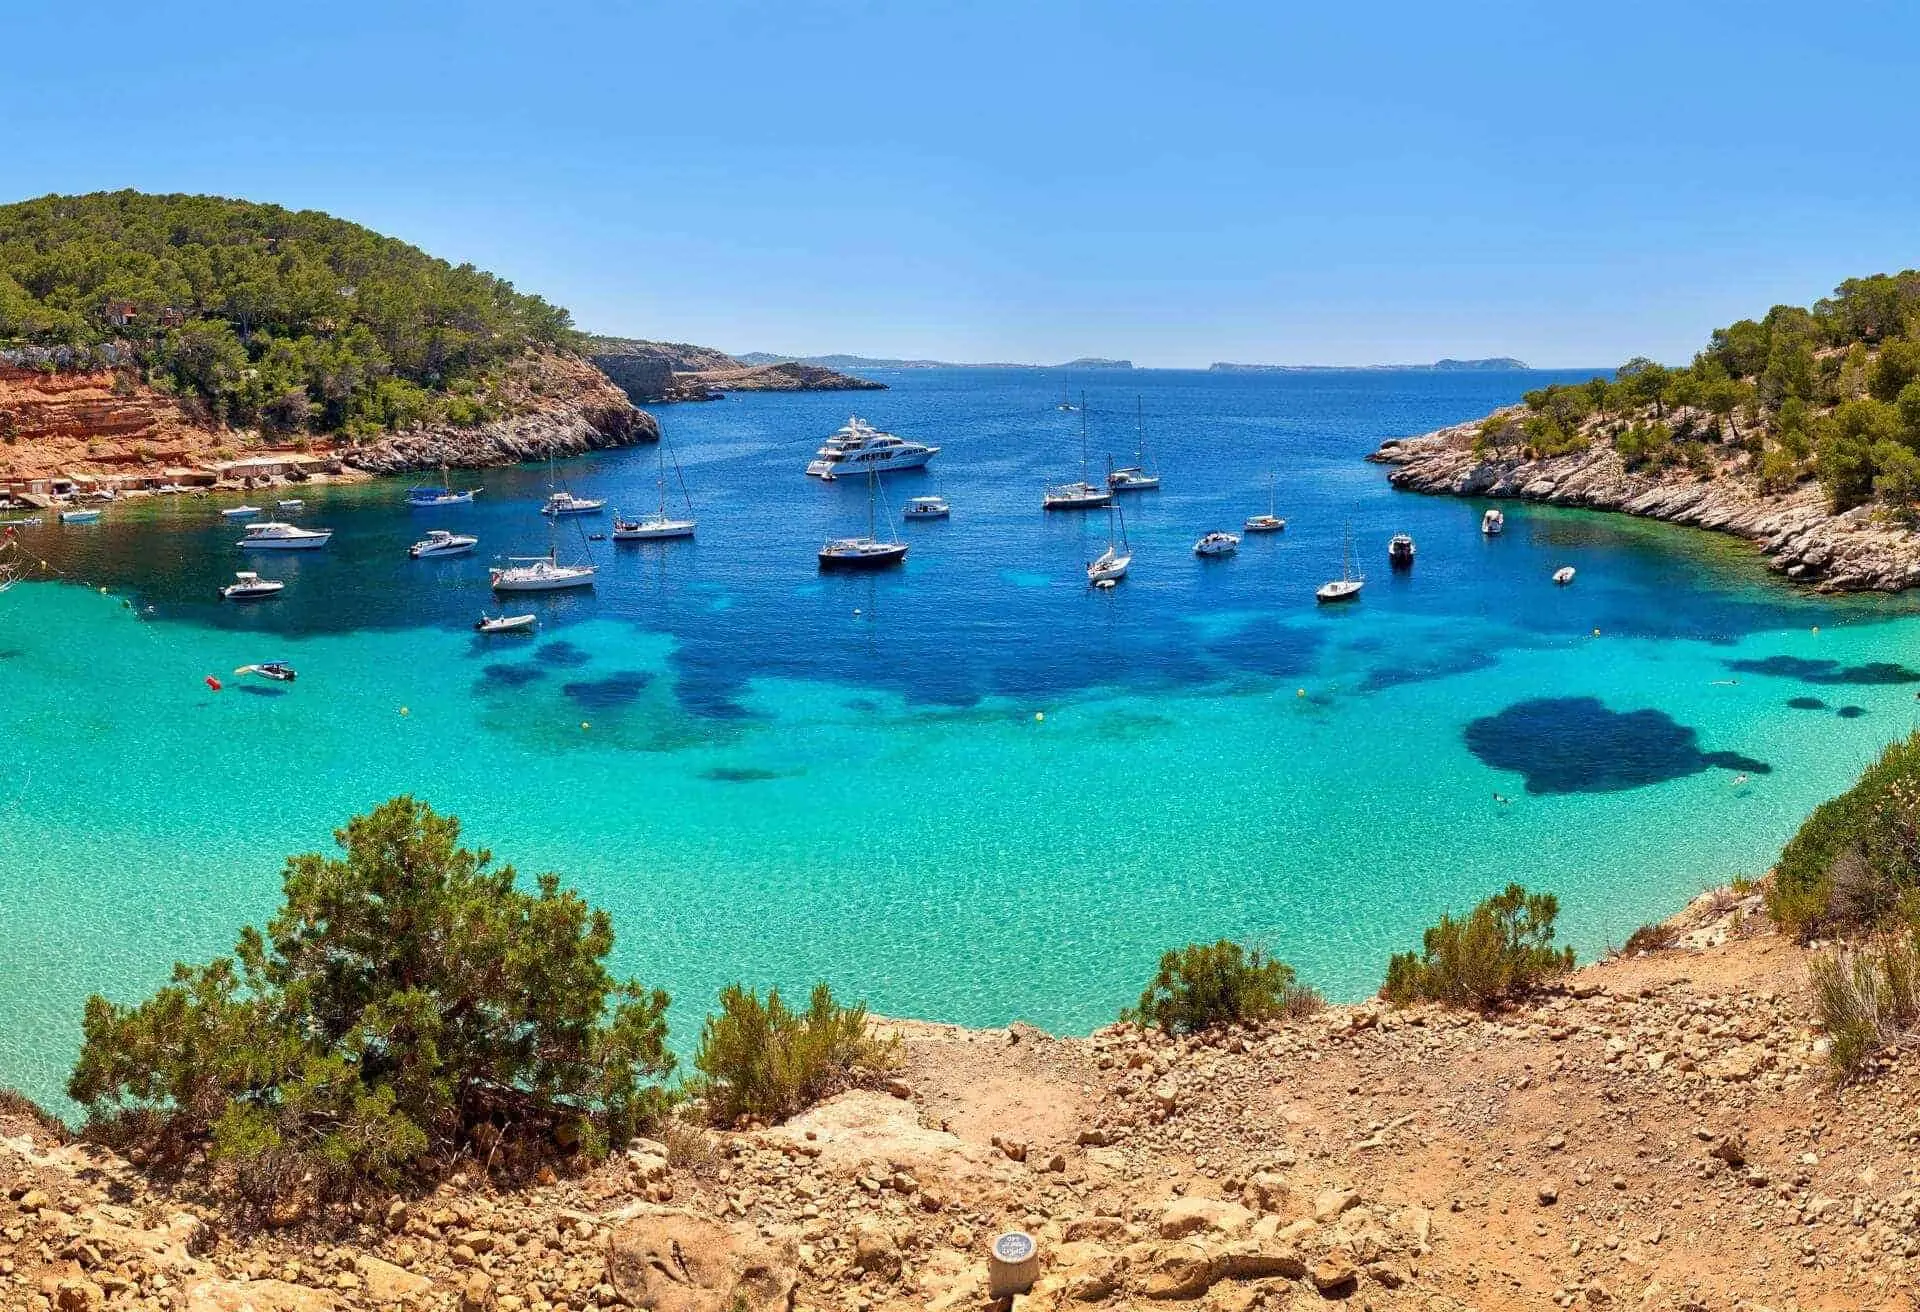 House Image of Clima de Ibiza: Una Guía Completa para los Viajeros